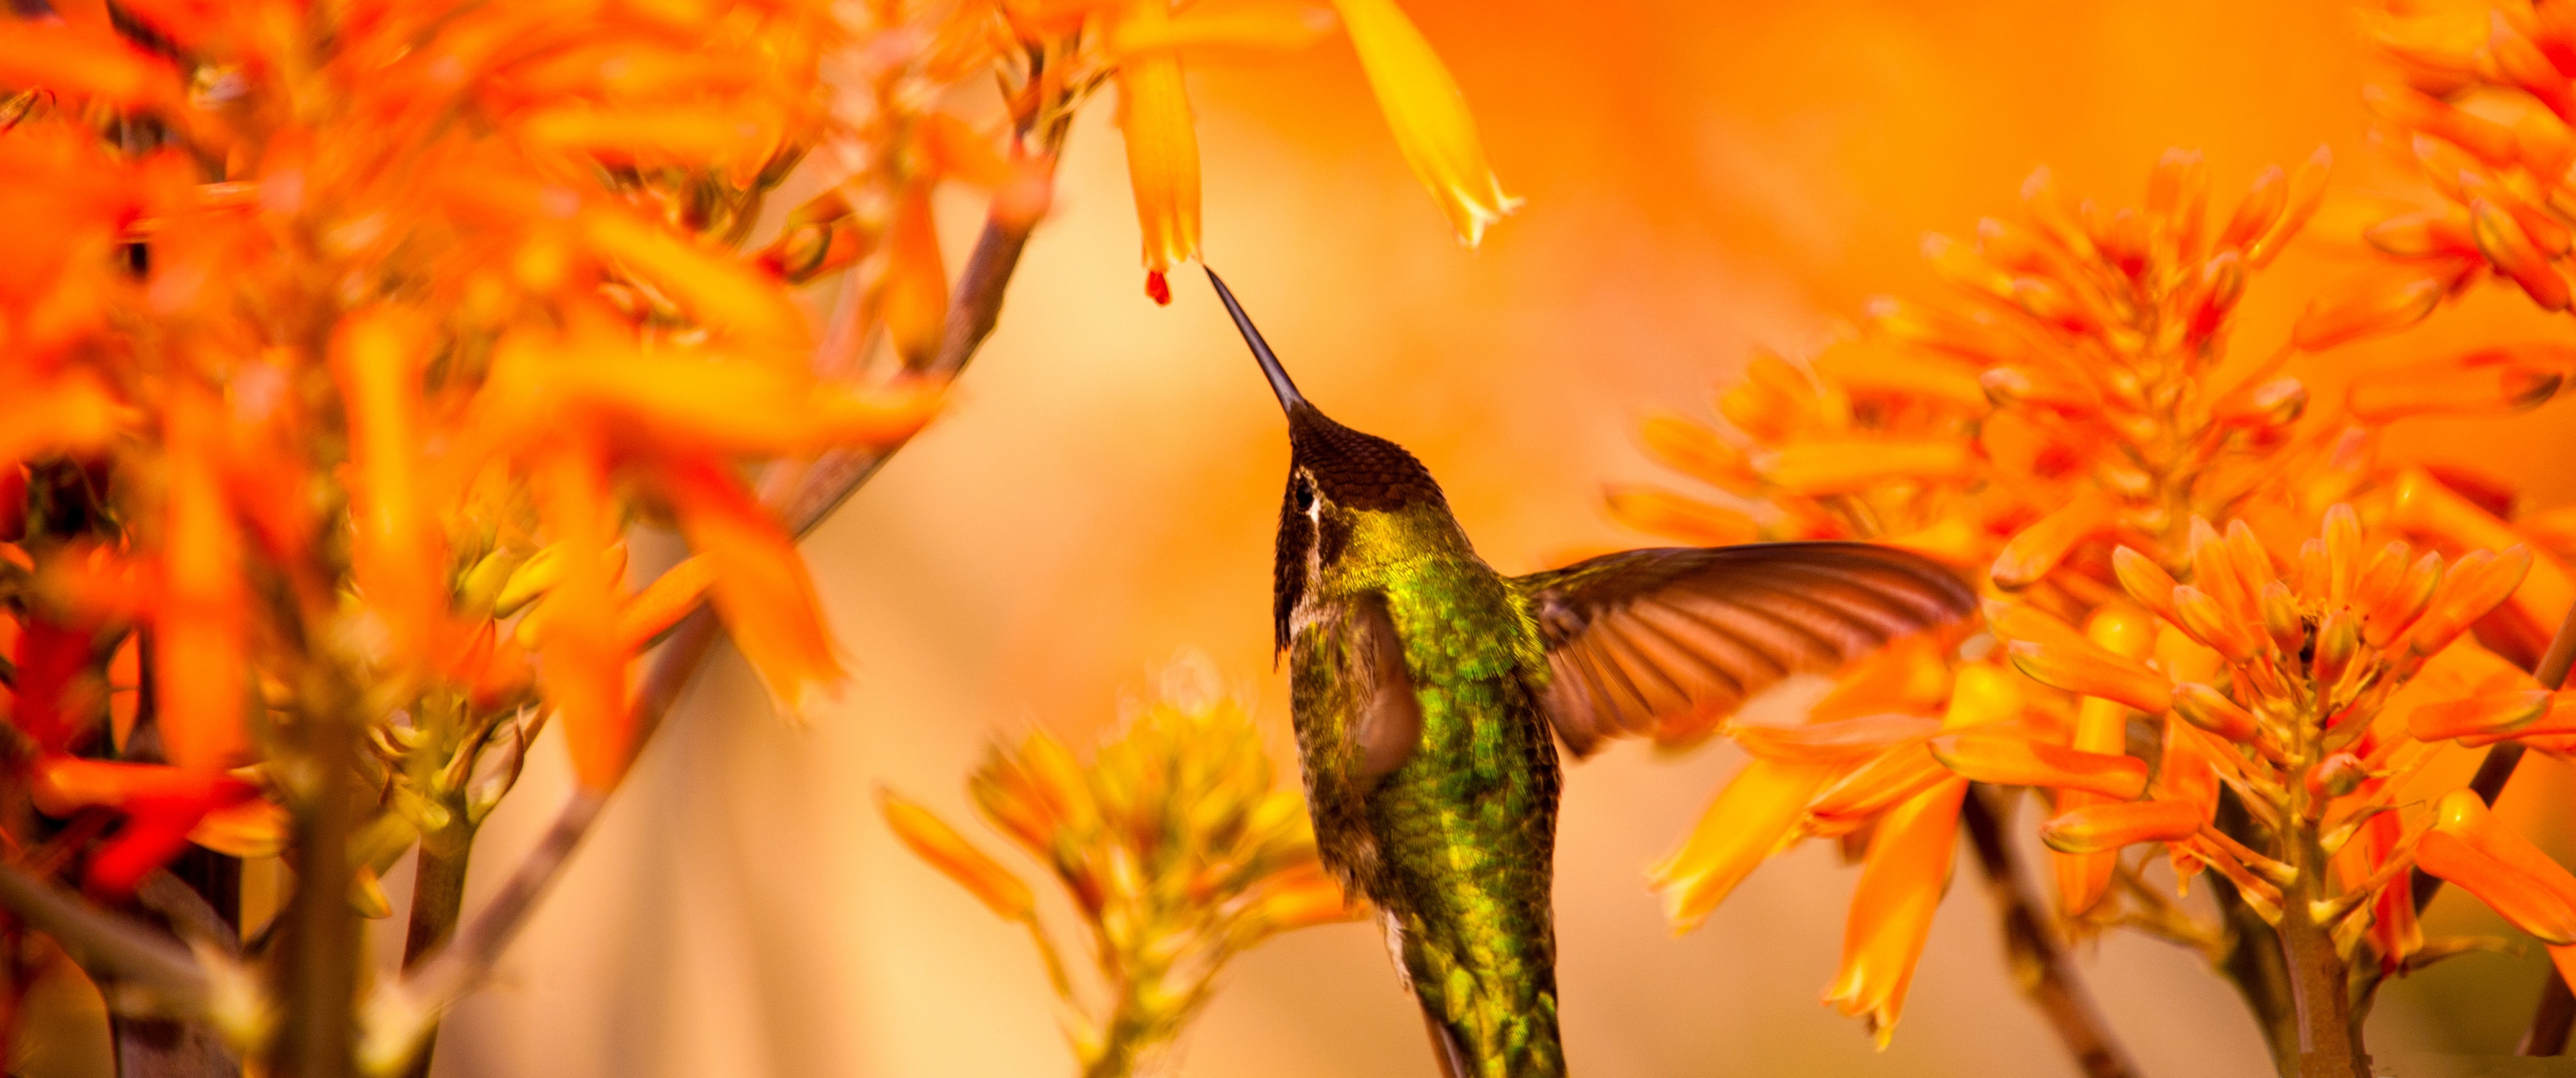 beautiful hummingbird feeding, колибри, маленькая птичка, цветы, пьет нектар, 3440х1440